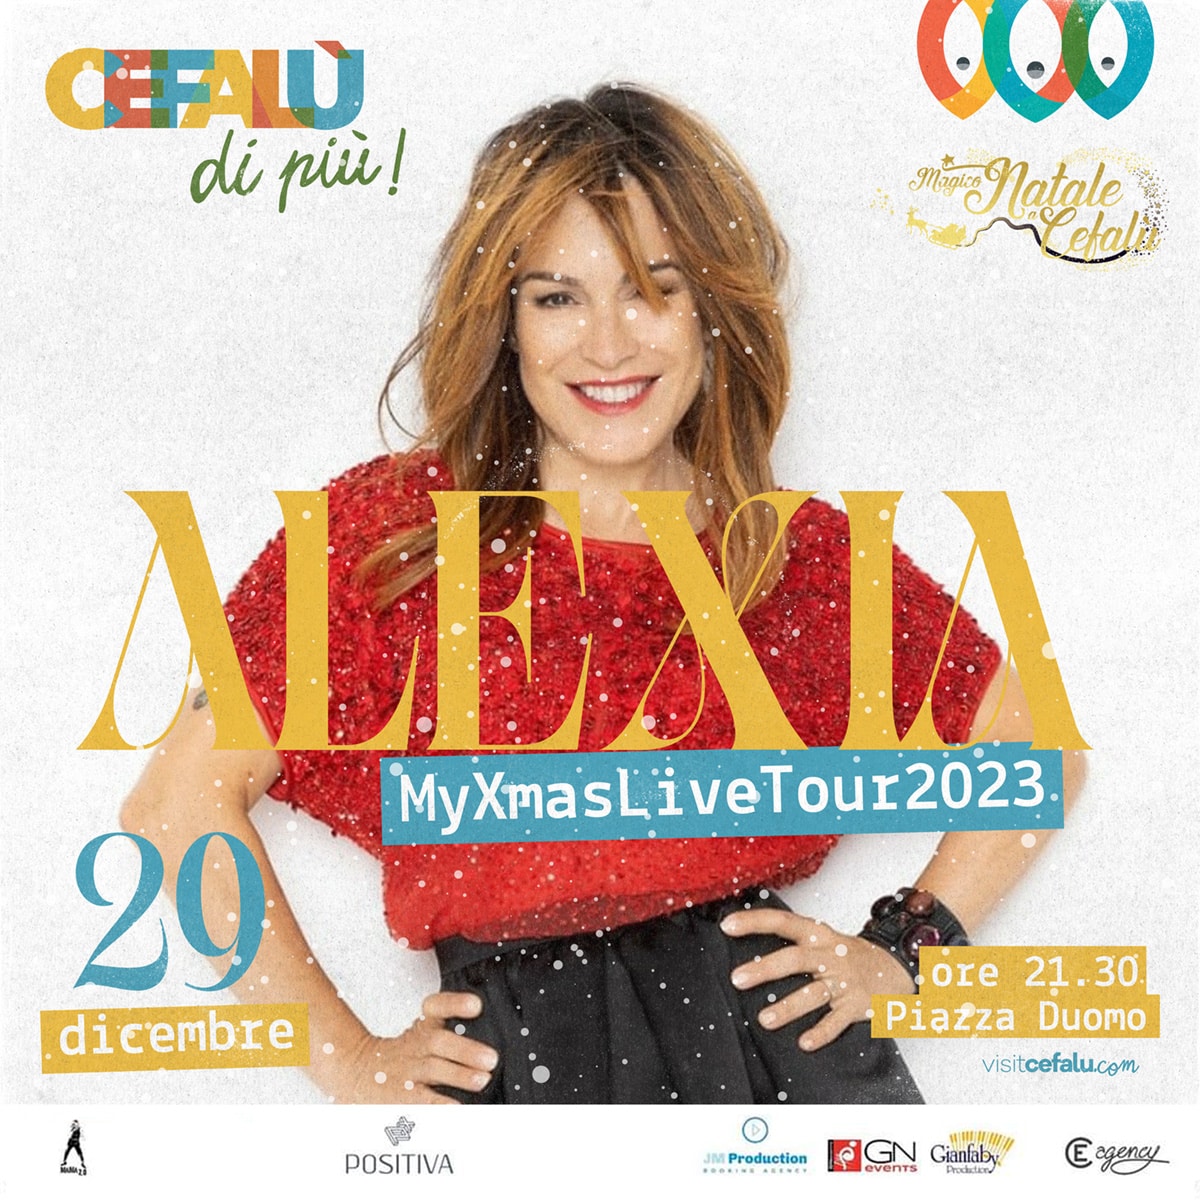 Alexia - My Xmas Live Tour 2023